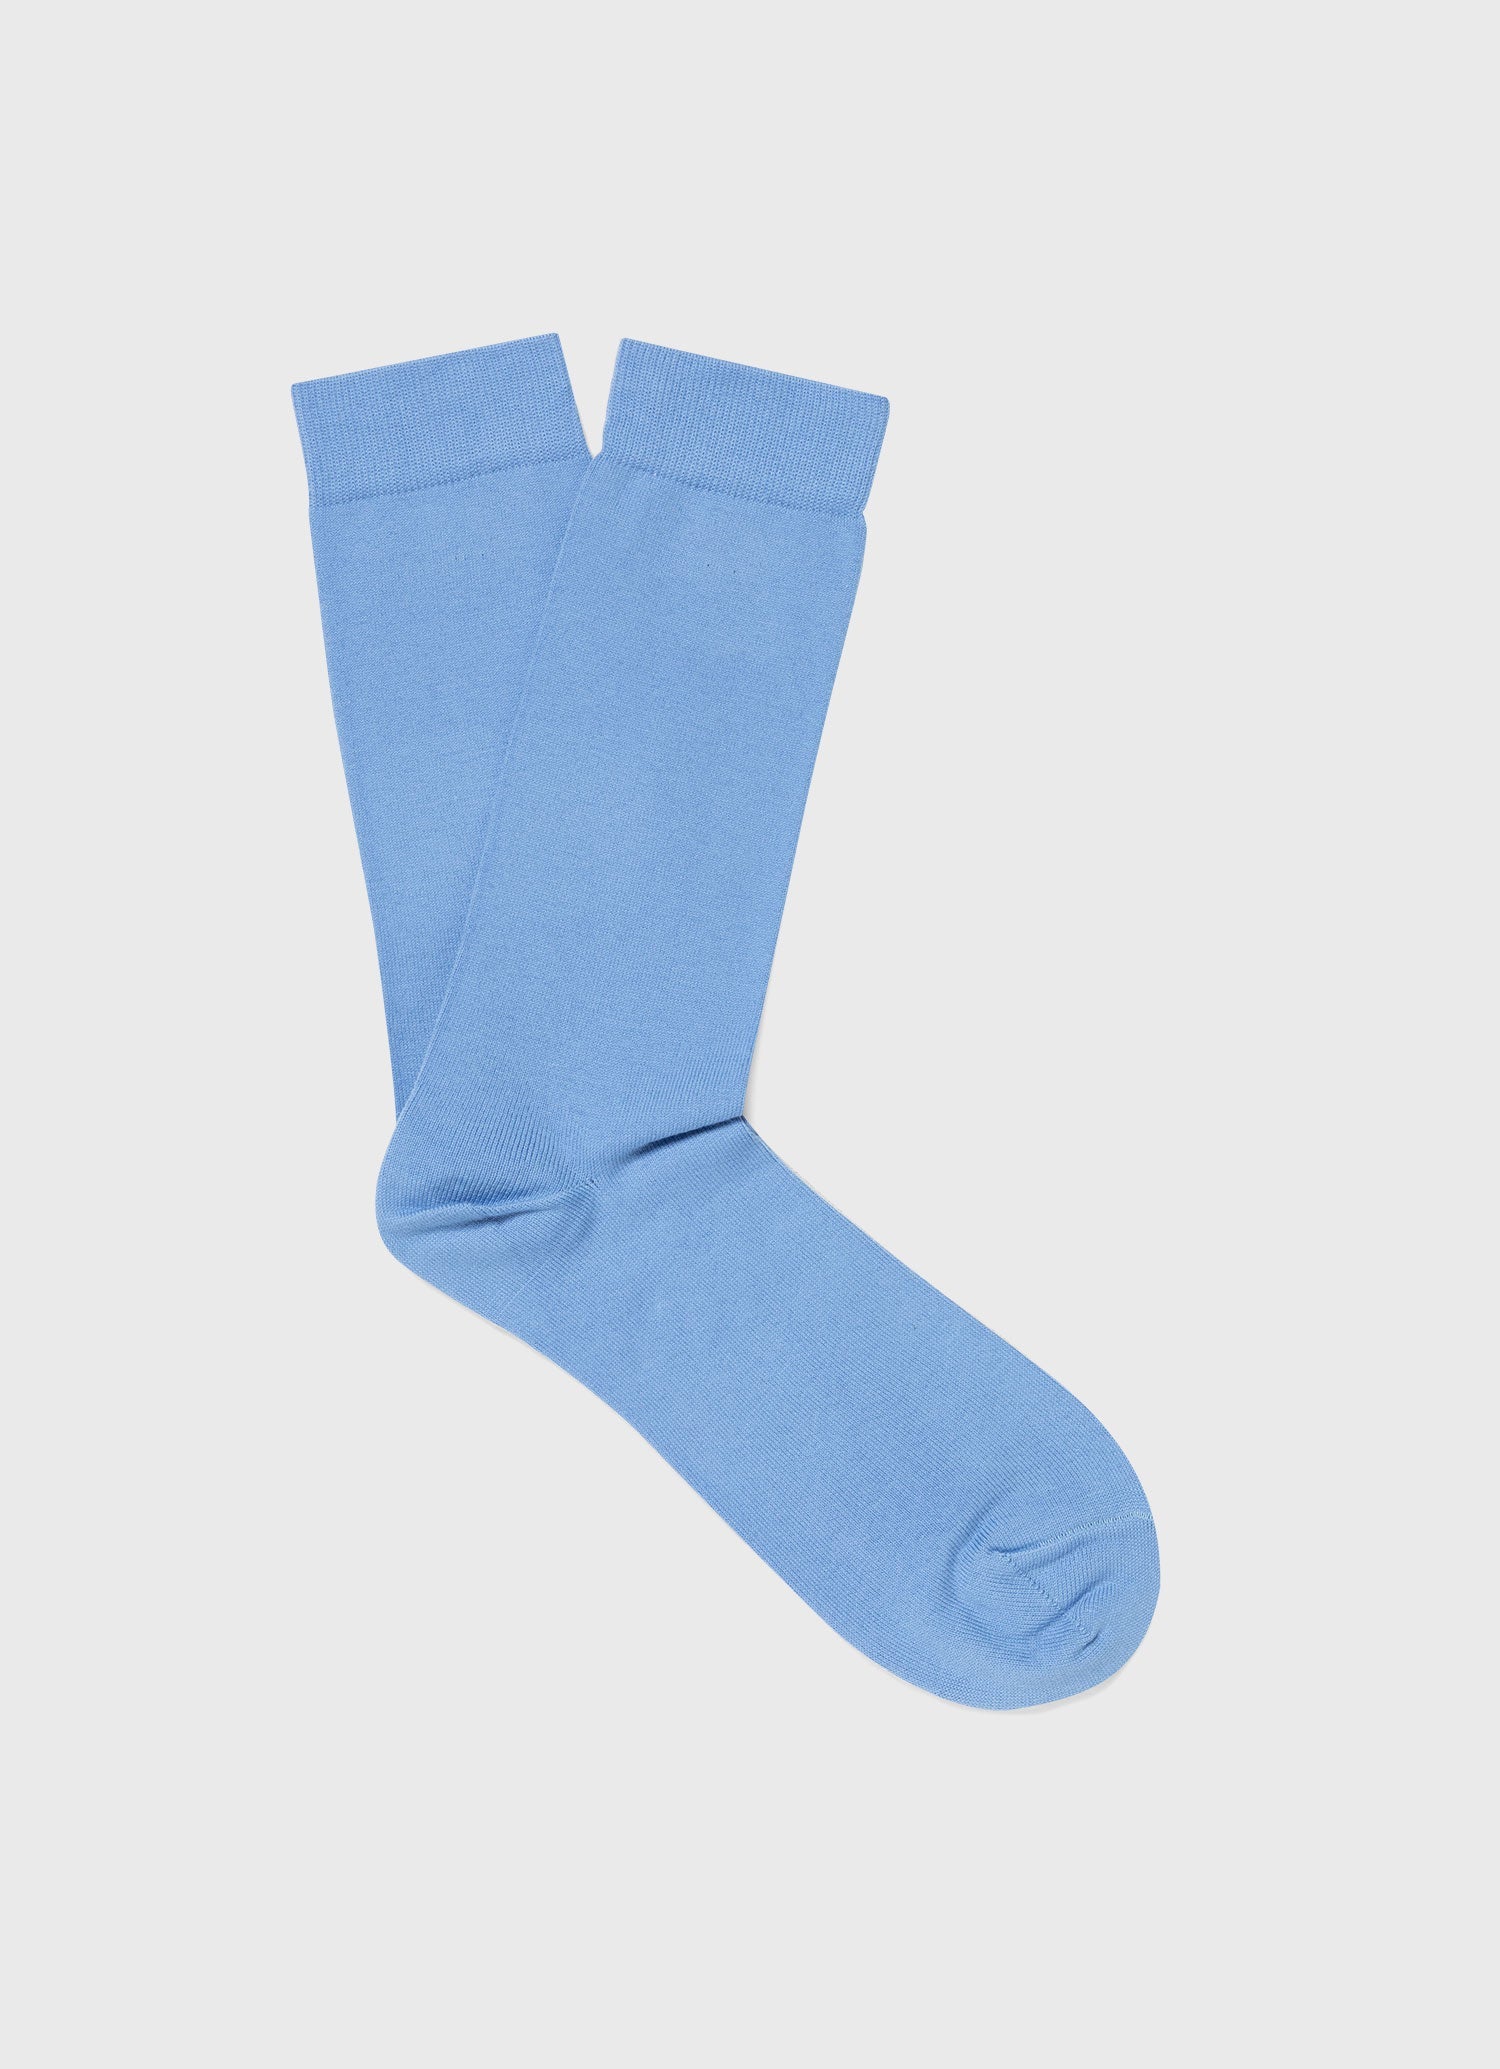 Men's Cotton Socks in Cool Blue